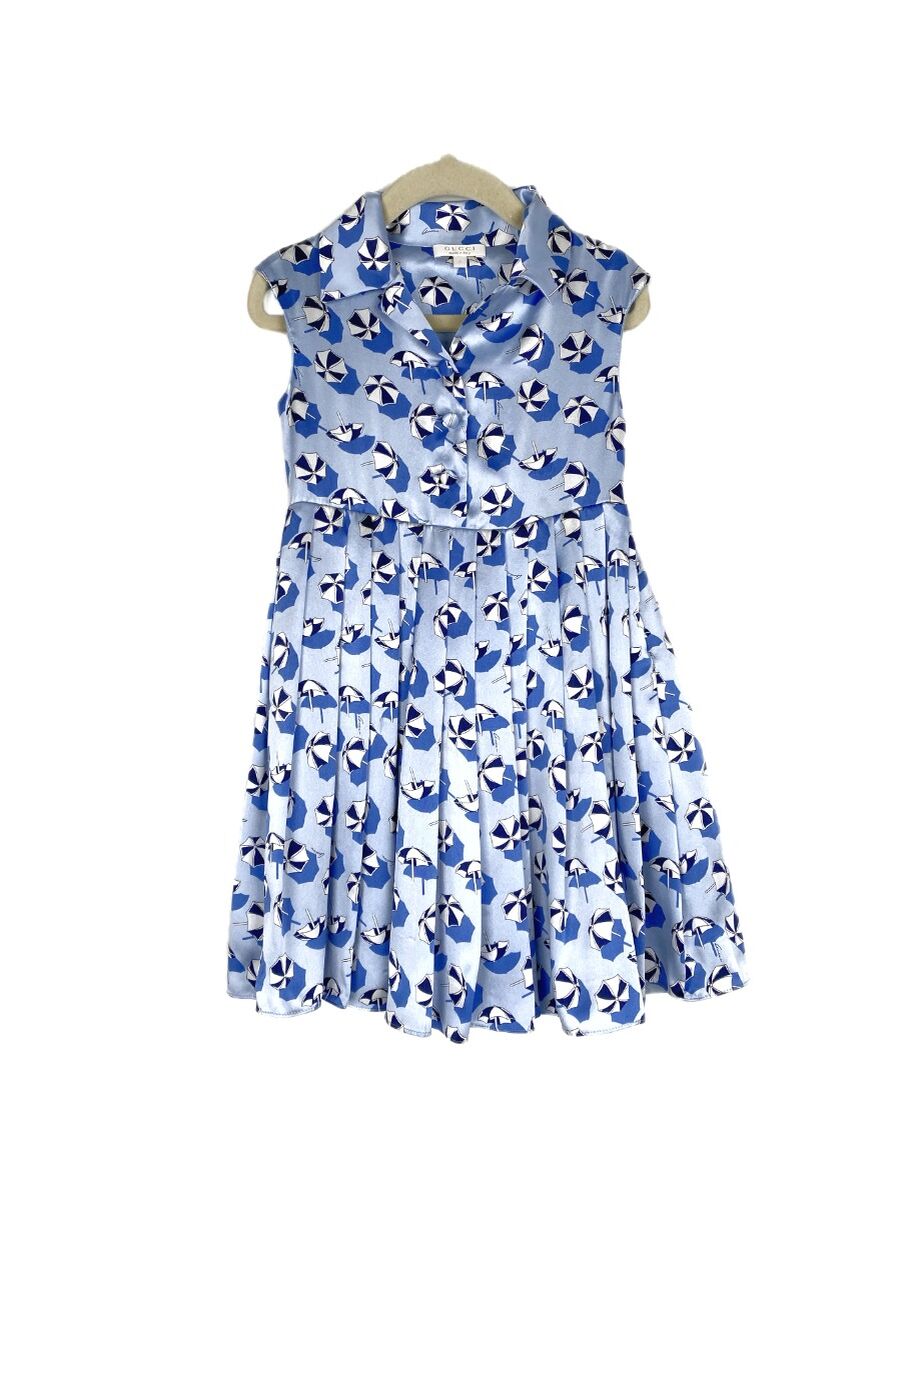 image 1 Детское платье голубого цвета без рукавов с принтом